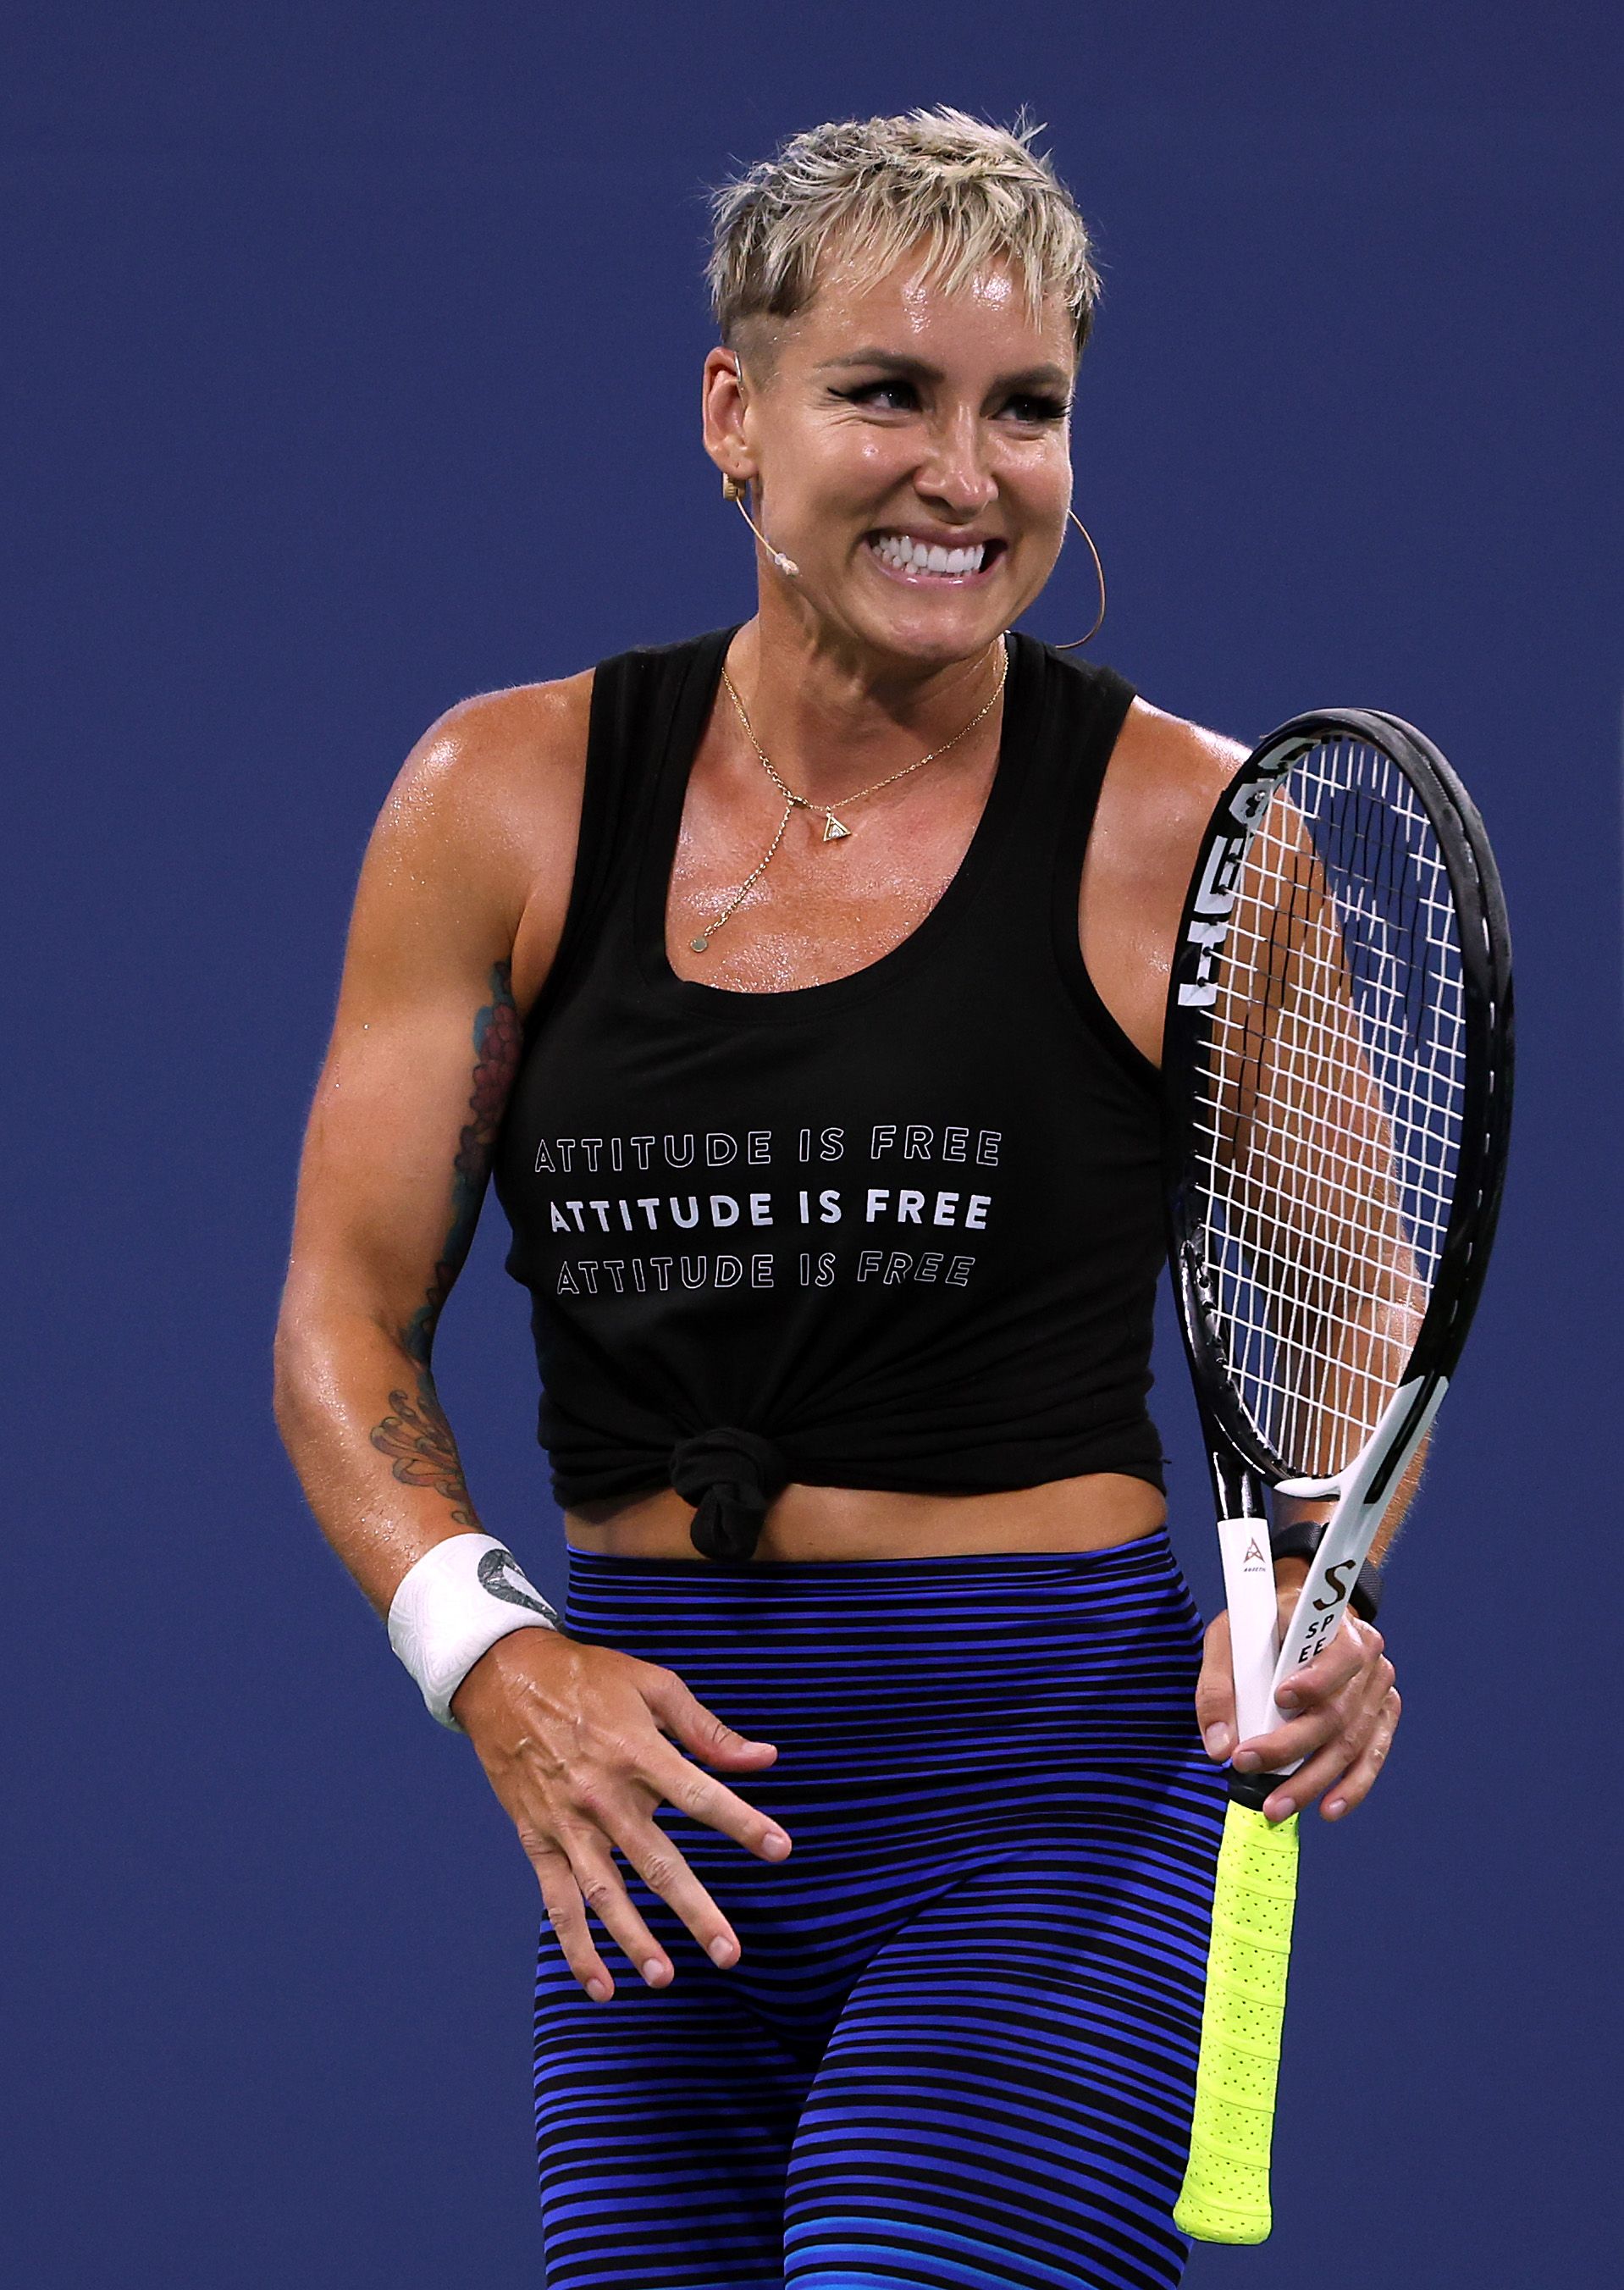 Tennis Player Bethanie Mattek-Sands Facts, News, Nickname